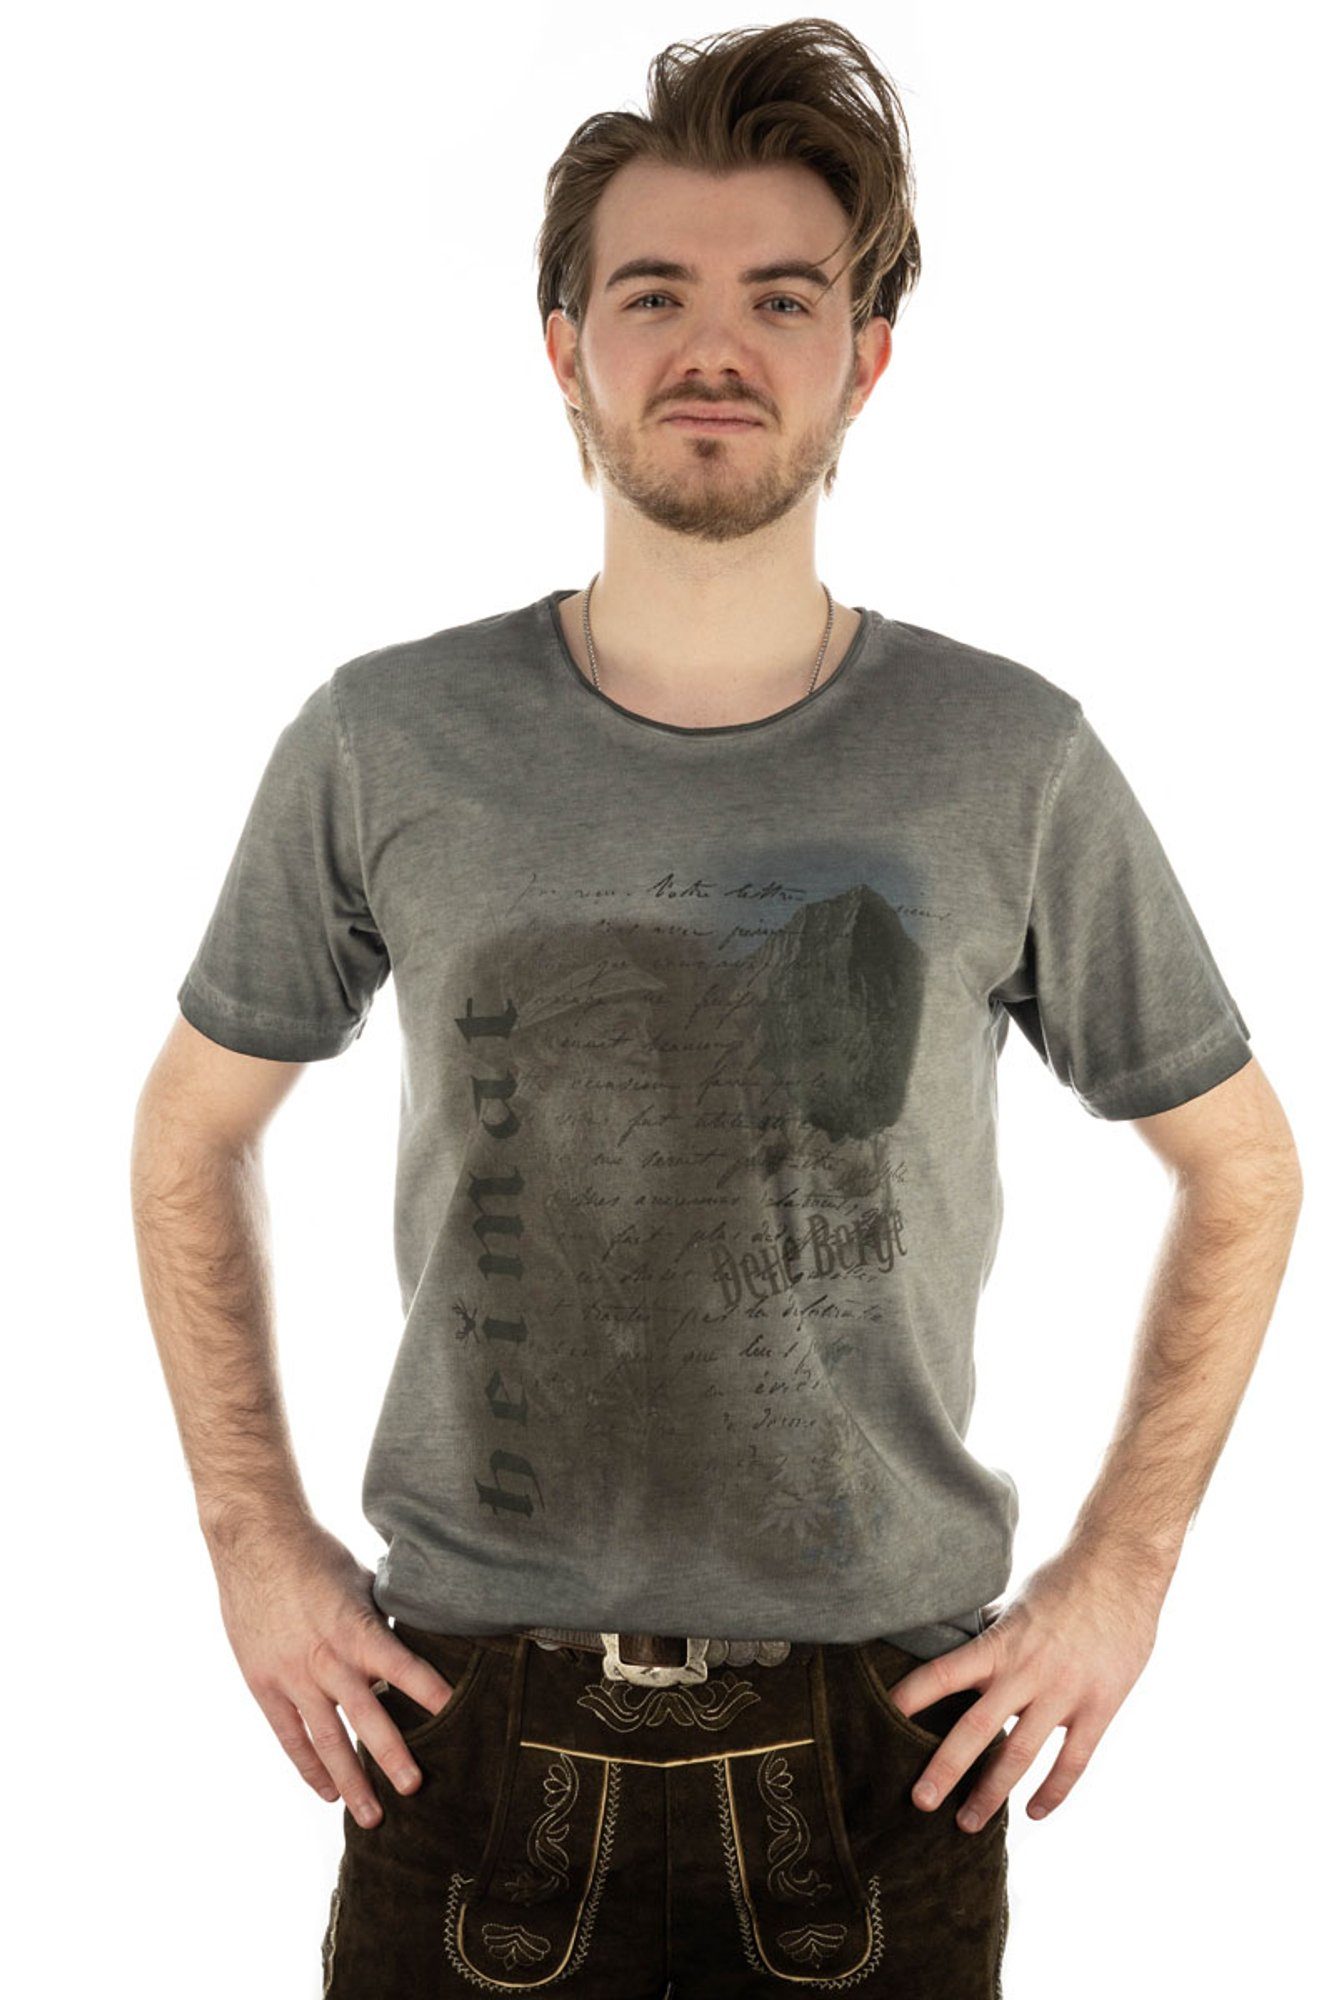 Kurzarm Motivdruck mit anthrazit T-Shirt Praiol Trachtenshirt OS-Trachten